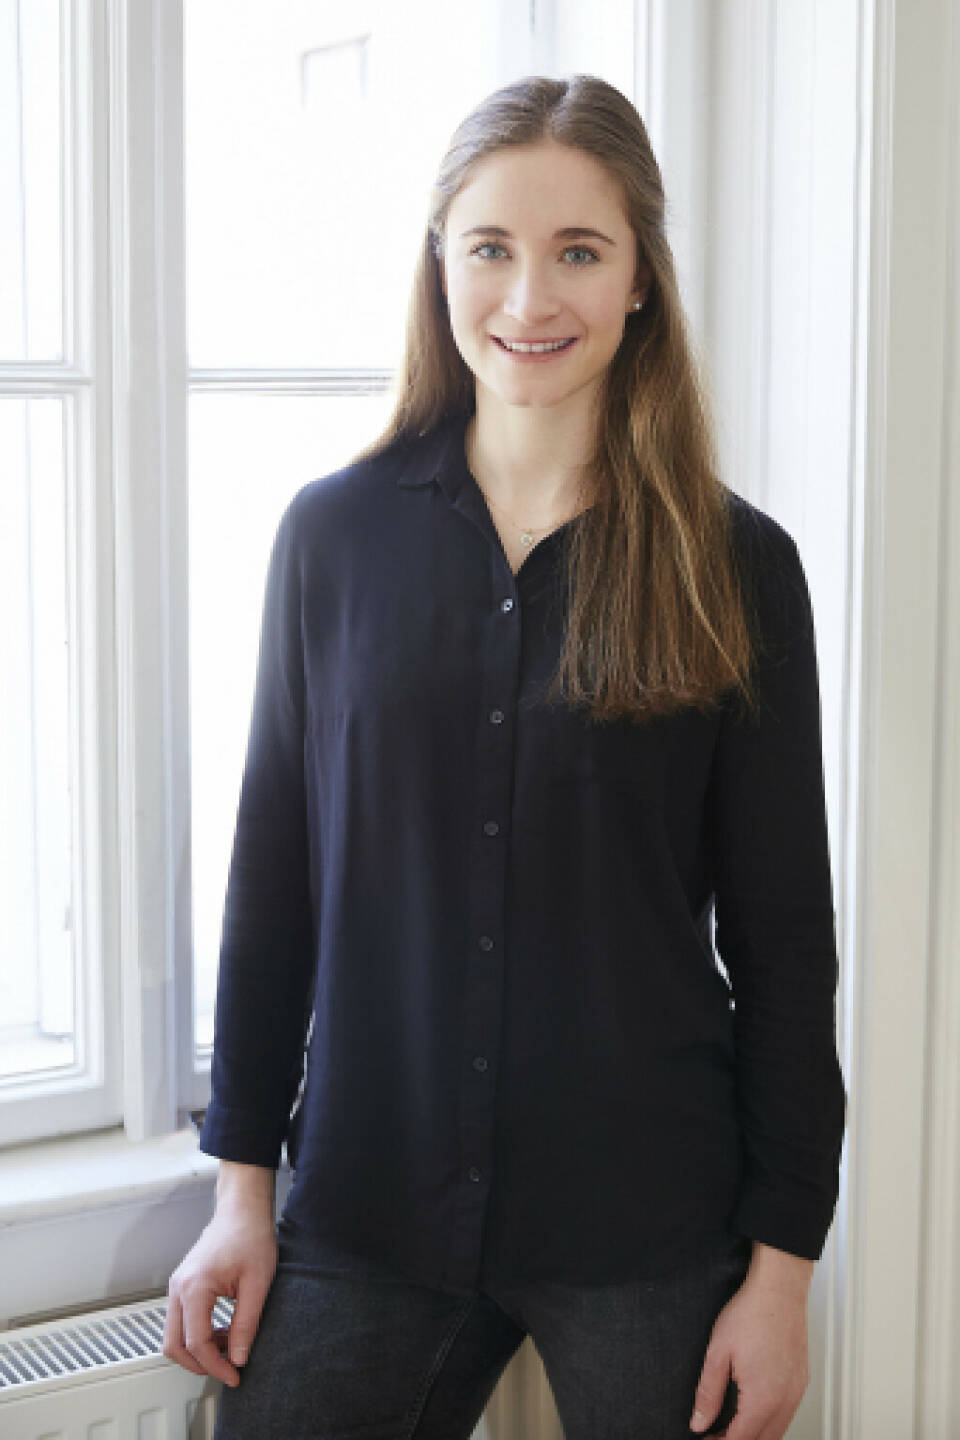 Katharina Huber ist neue Marketing Managerin bei Haslinger / Nagele, Credit: Haslinger / Nagele